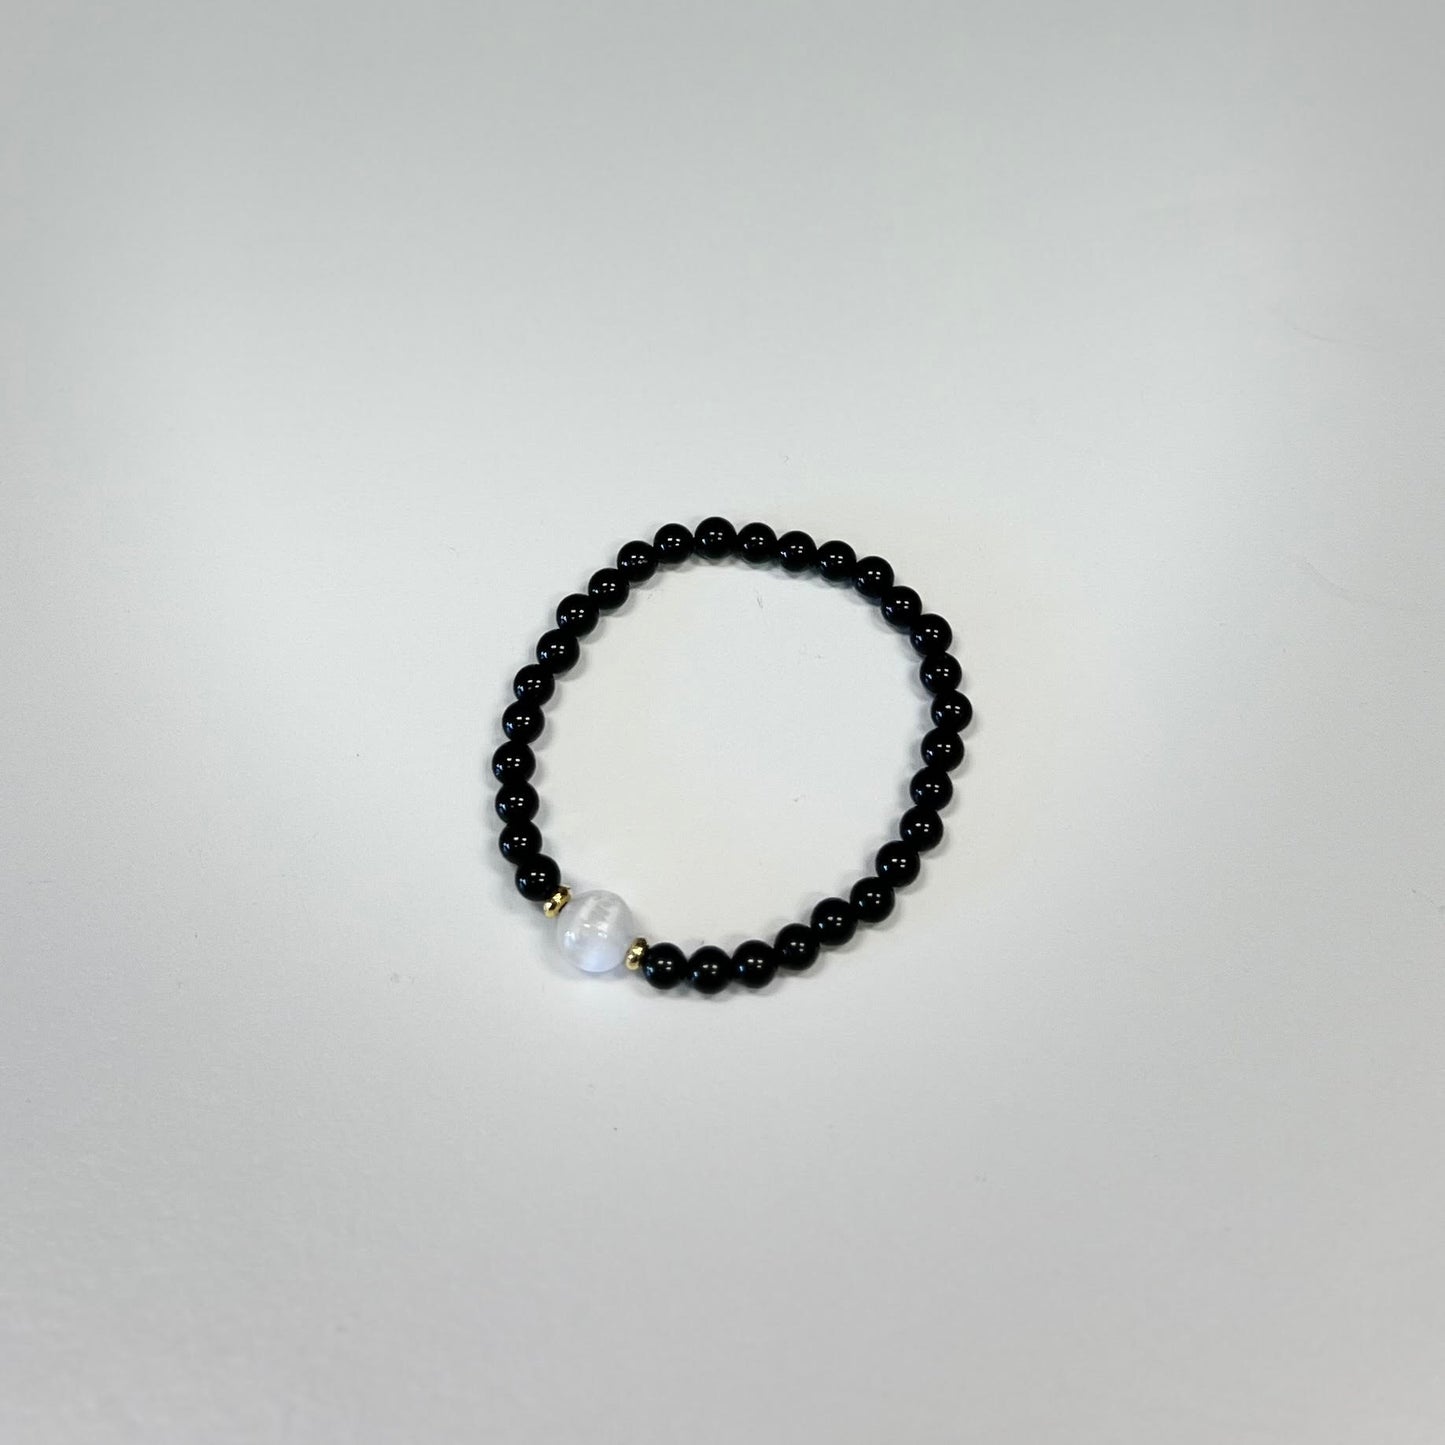 Black Tourmaline and Selenite Beaded Bracelet 8mm